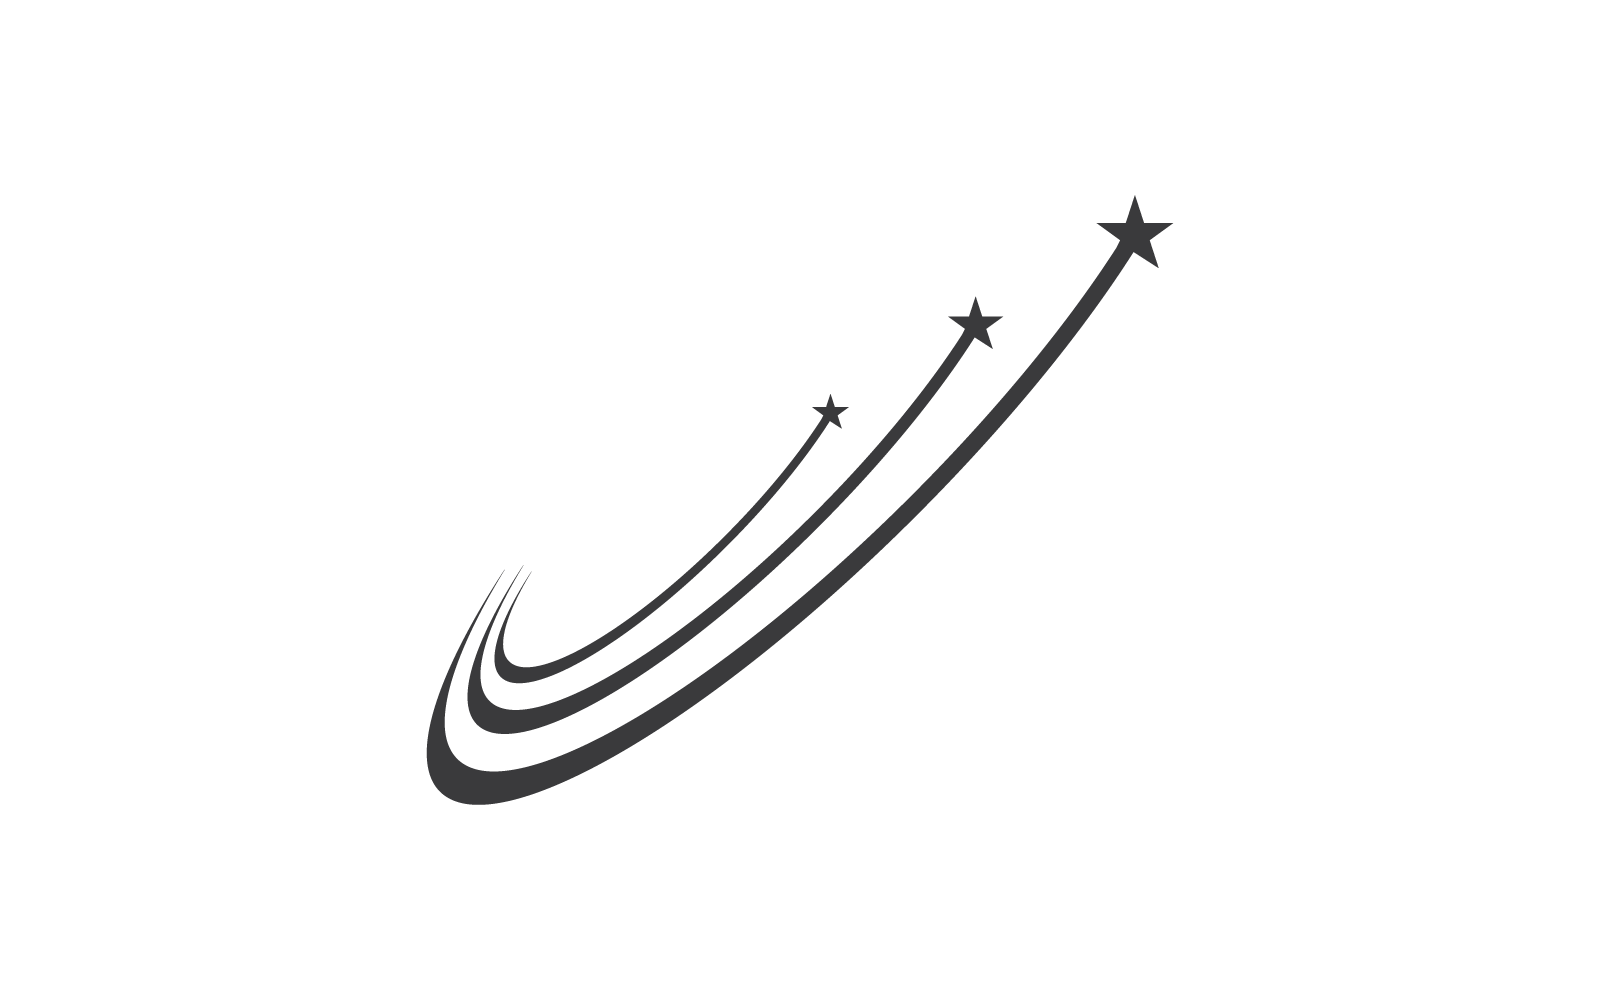 Вектор иллюстрации логотипа звезды плоский дизайн eps 10